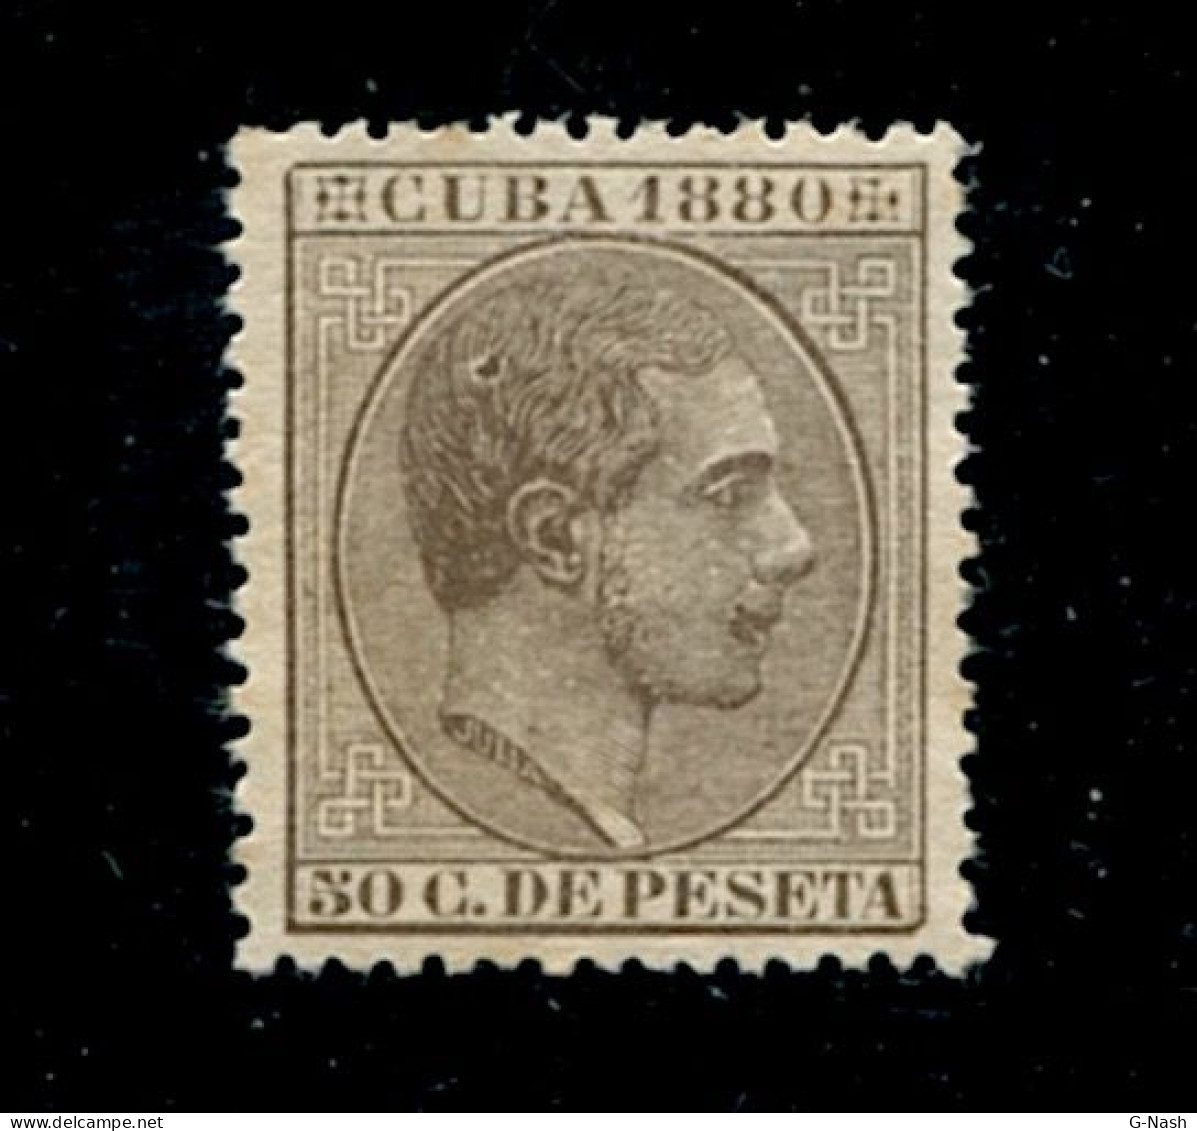 Cuba (1880) Alphonse XII - 50 Centimes - Préphilatélie